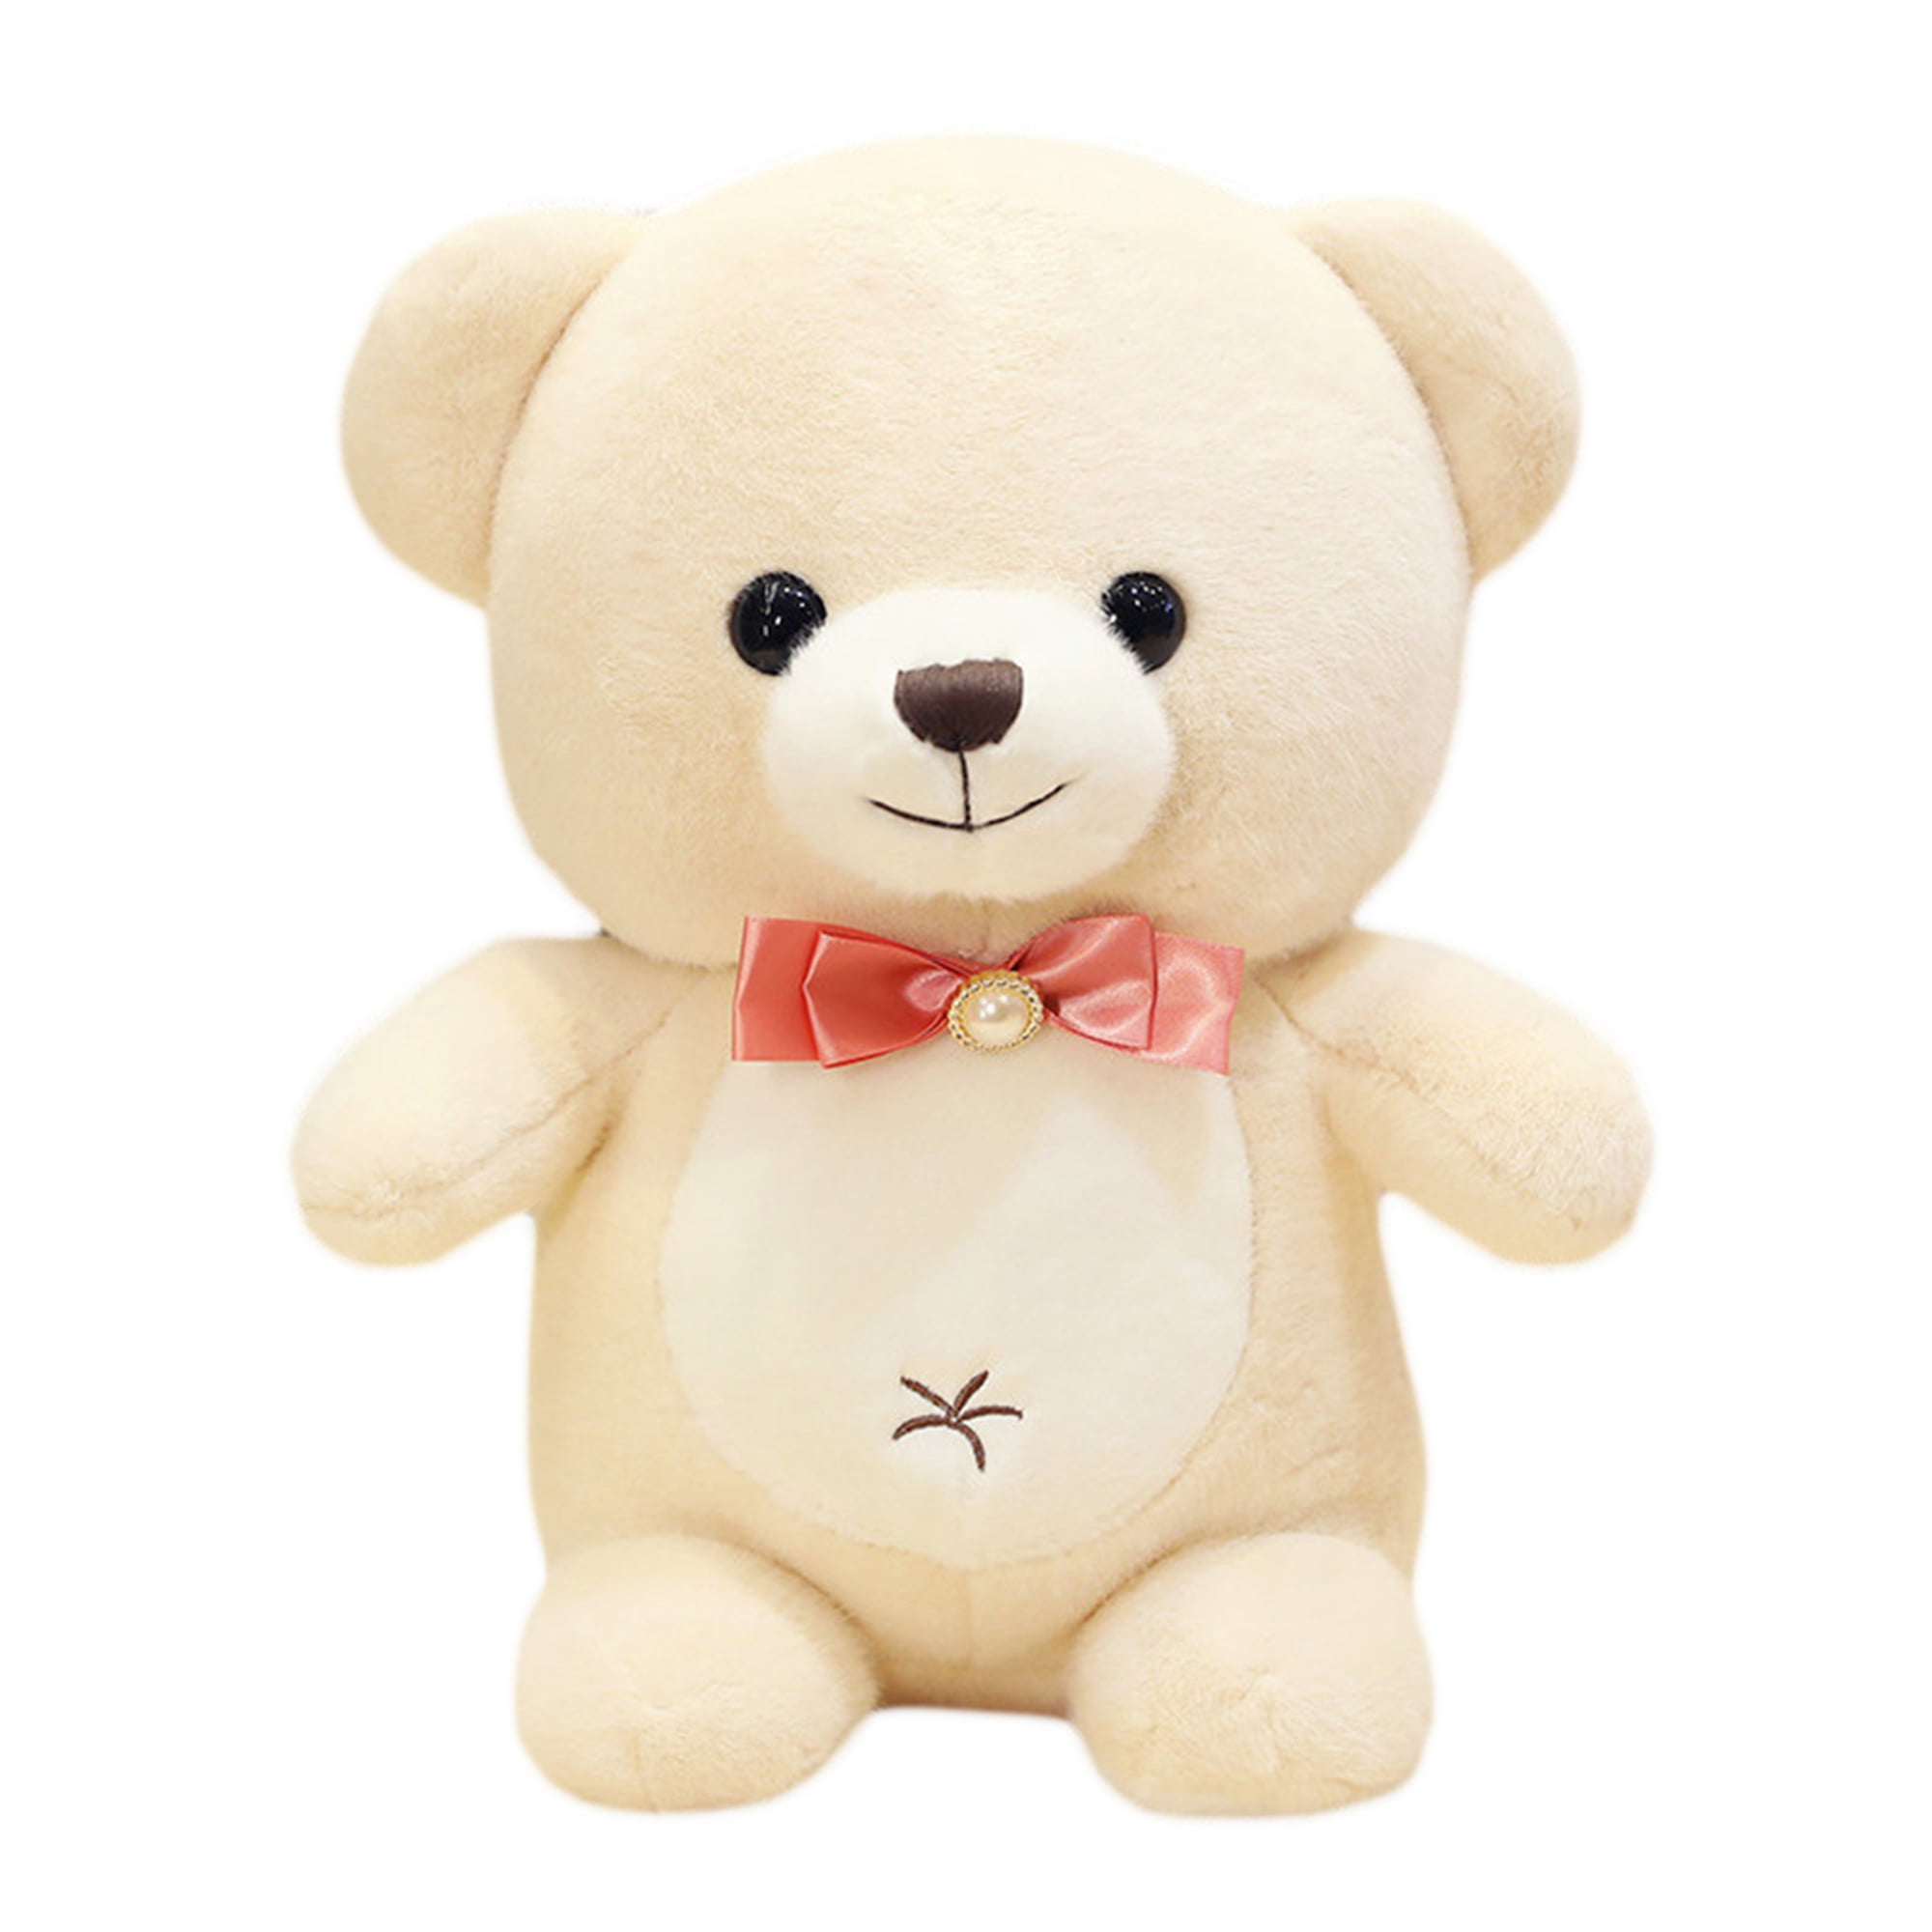 High Quality Teddy Bear Plush Toys 25cm Stuffed teddy bear Birthday Gift Toy 